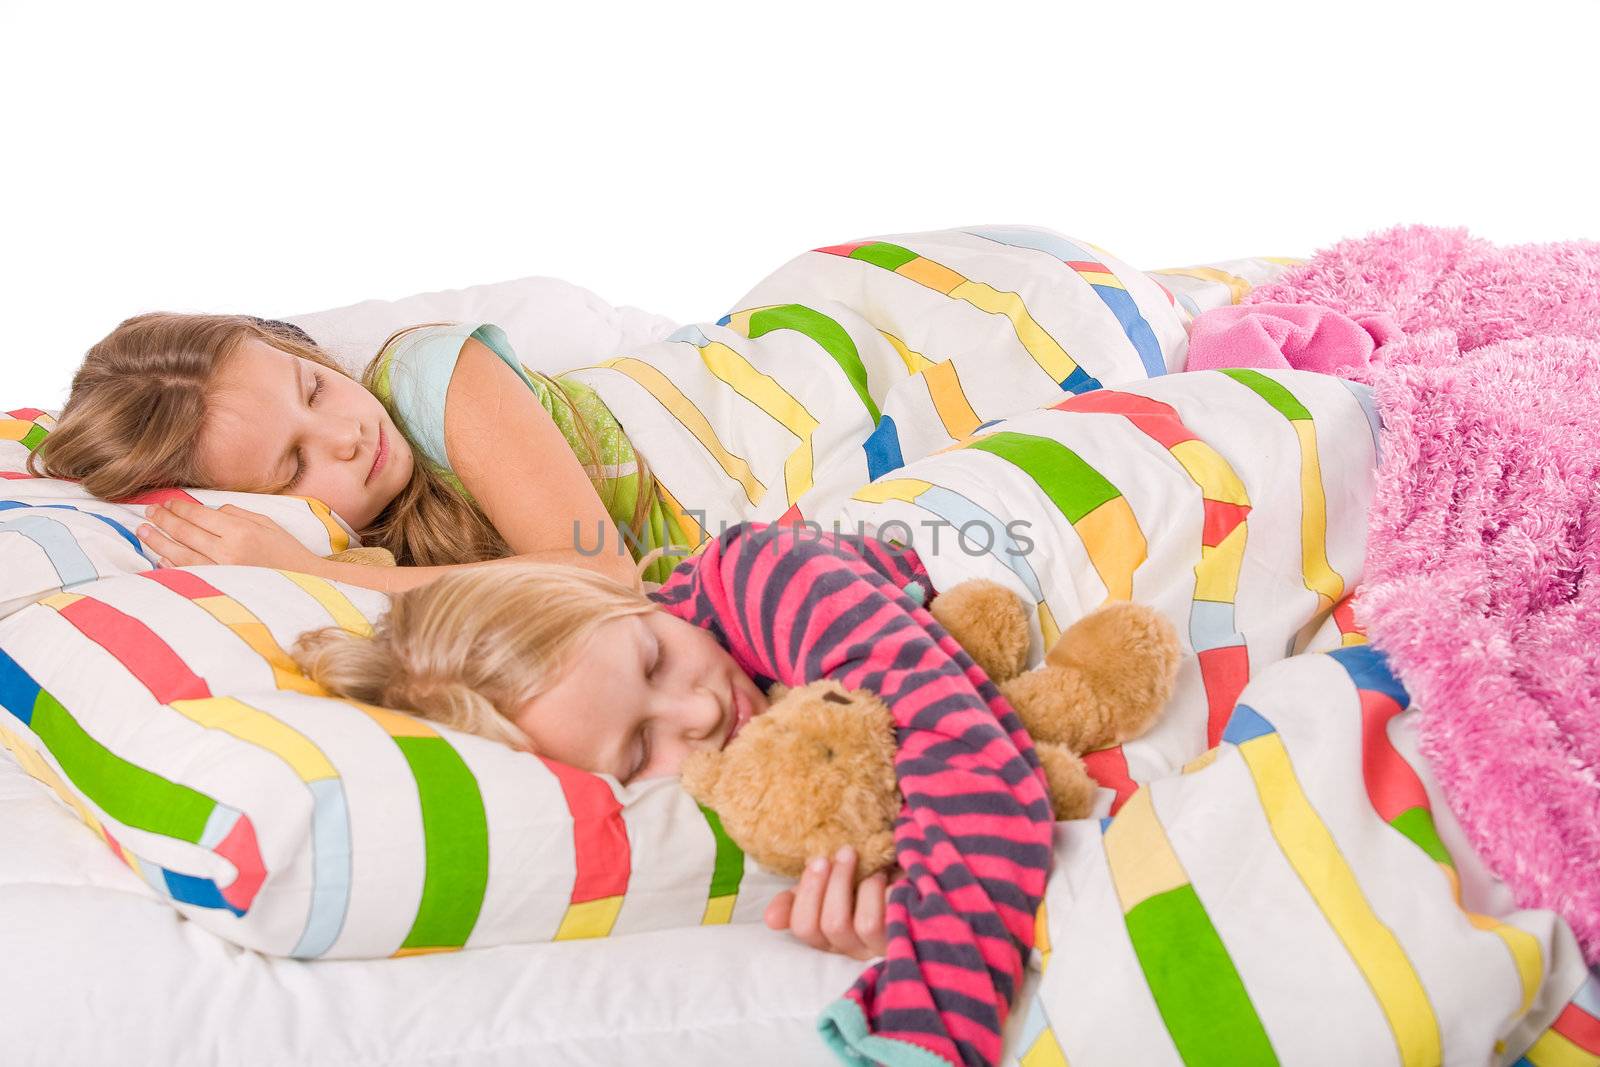 2 sleeping children by DNFStyle